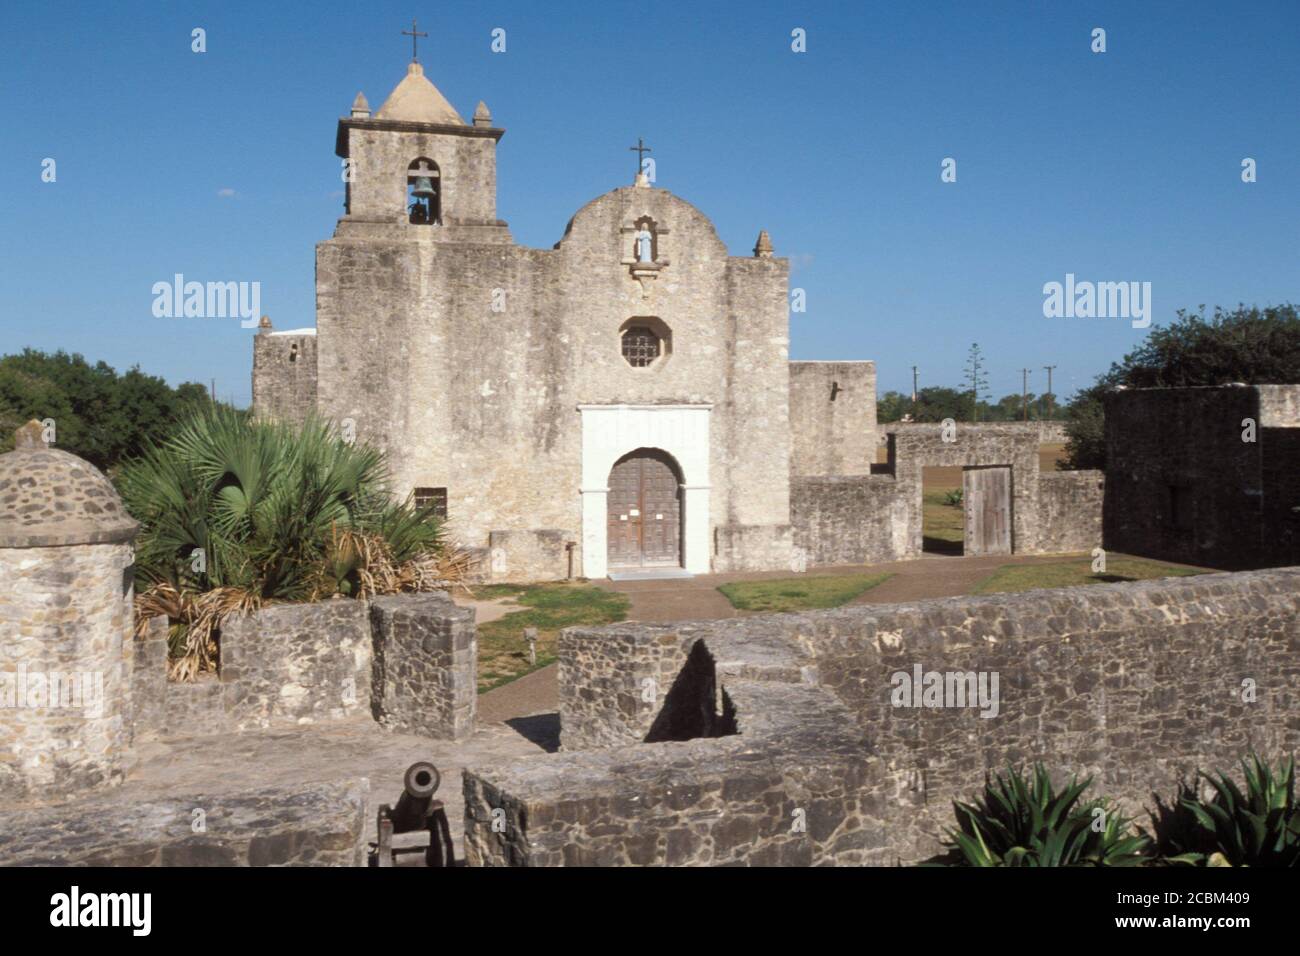 Goliad Texas USA: Historische Mission Presidio La Bahia, erbaut in den 1750er Jahren, Ort der militärischen Aktion während des Texas-Krieges für die Unabhängigkeit von Mexiko in den 1830er Jahren. ©Bob Daemmrich Stockfoto